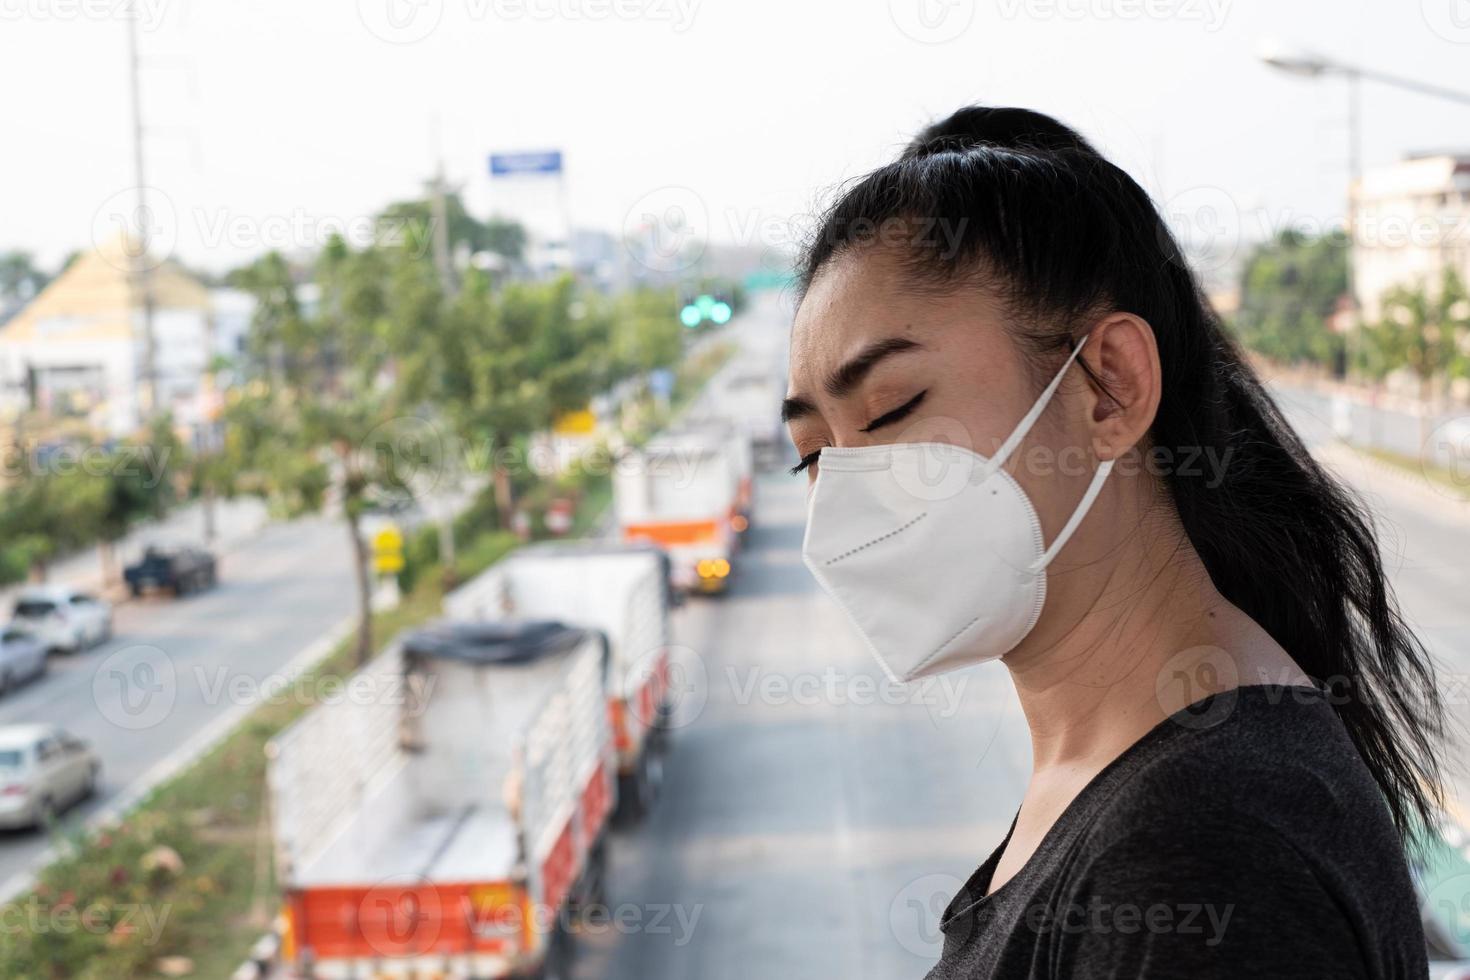 närbild av en kvinna som står och sätter på sig en respirator n95-mask för att skydda mot luftburna luftvägssjukdomar när influensa covid-19 coronavirus ebola pm2.5 damm och smog på vägen burrade bakgrunden foto